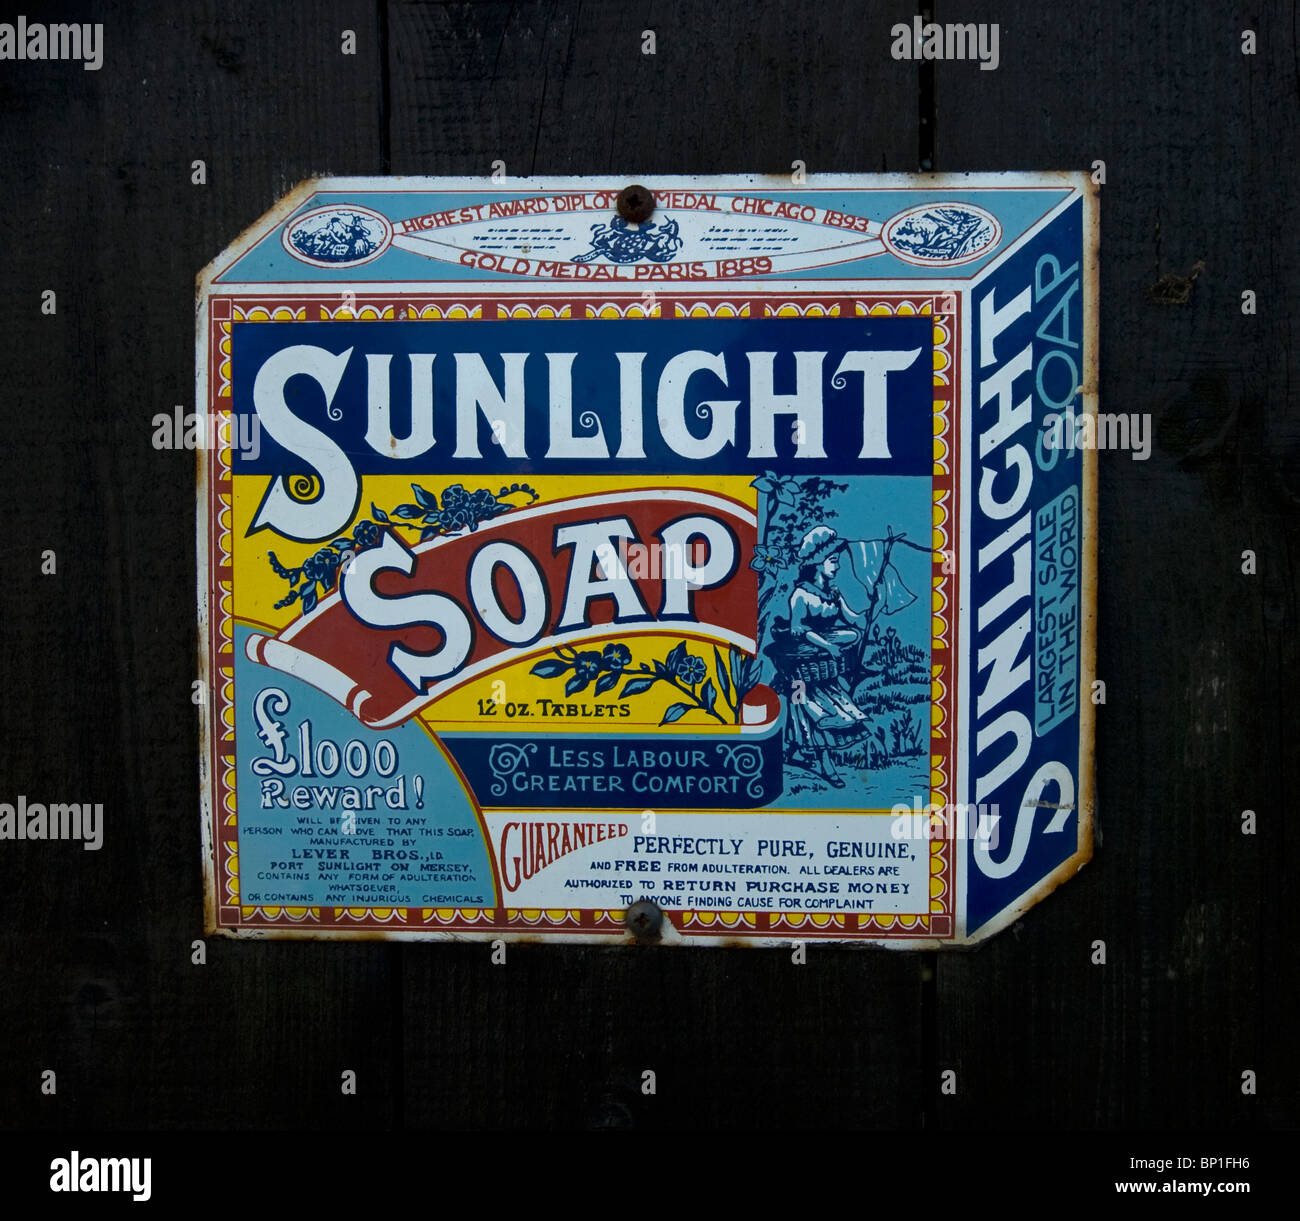 enamel sign advert for sunlight soap Stock Photo